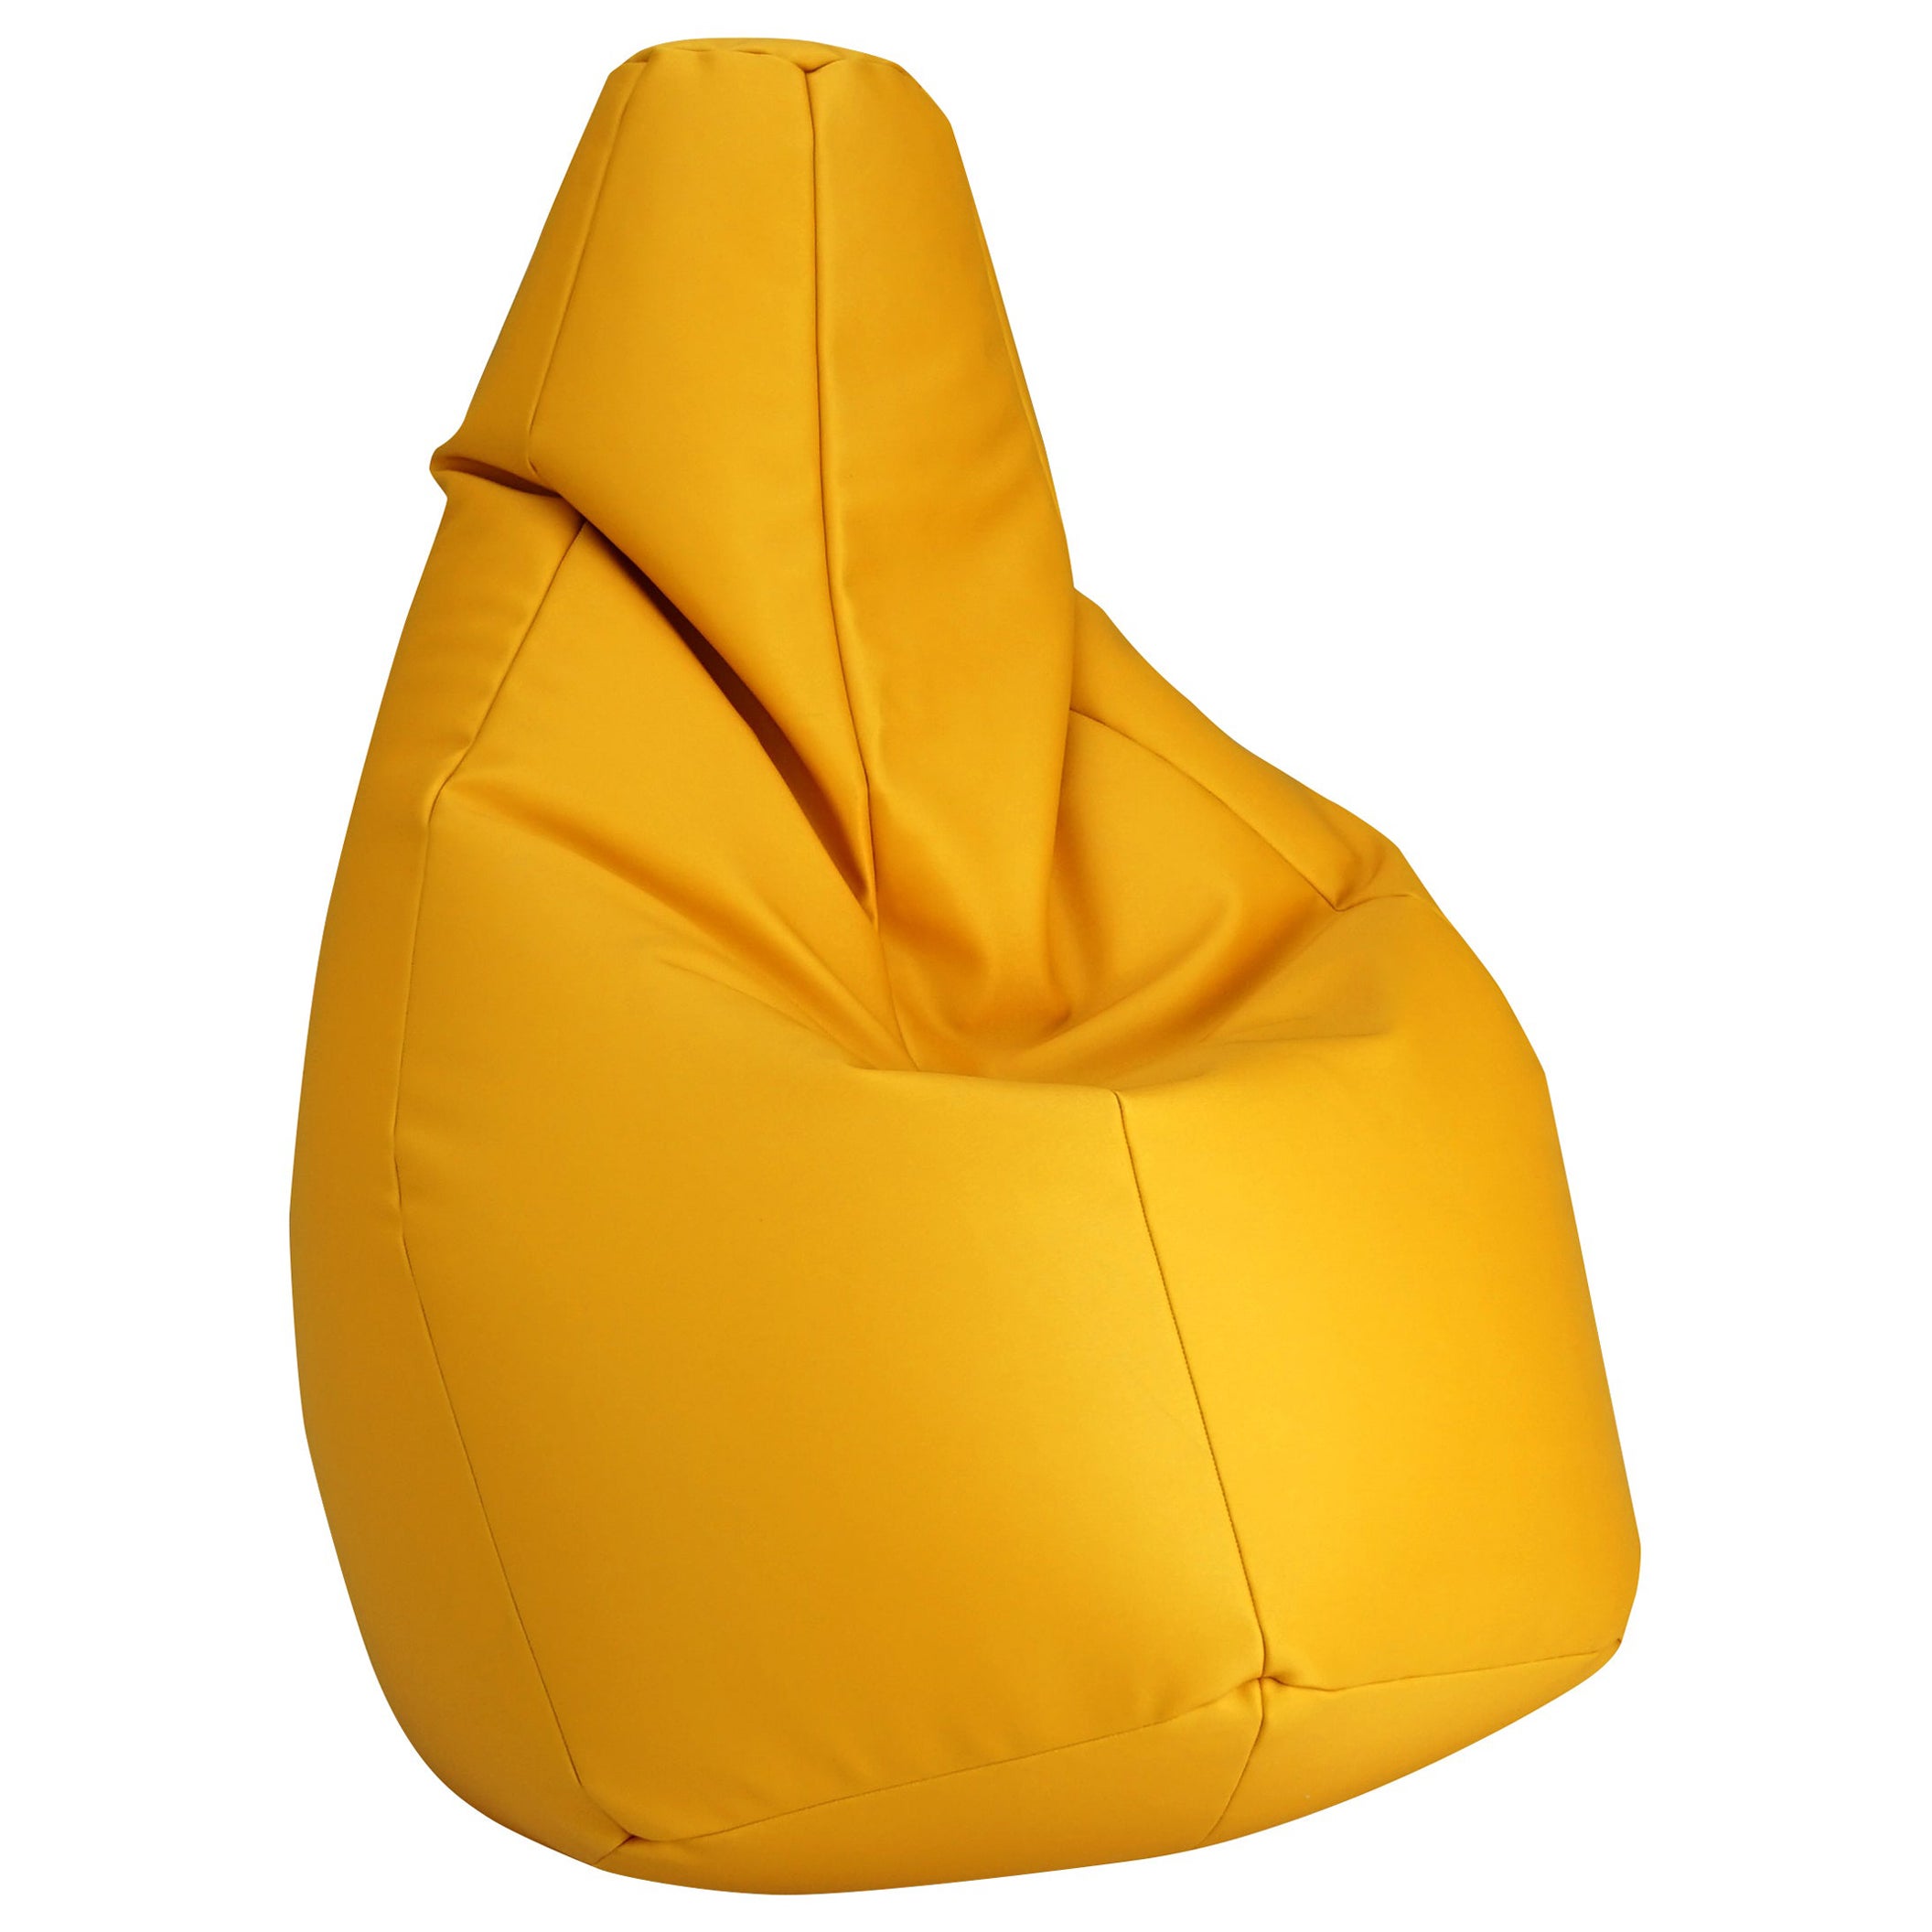 Zanotta Small Sacco in Yellow Vip Fabric by Gatti, Paolini, Teodoro For Sale